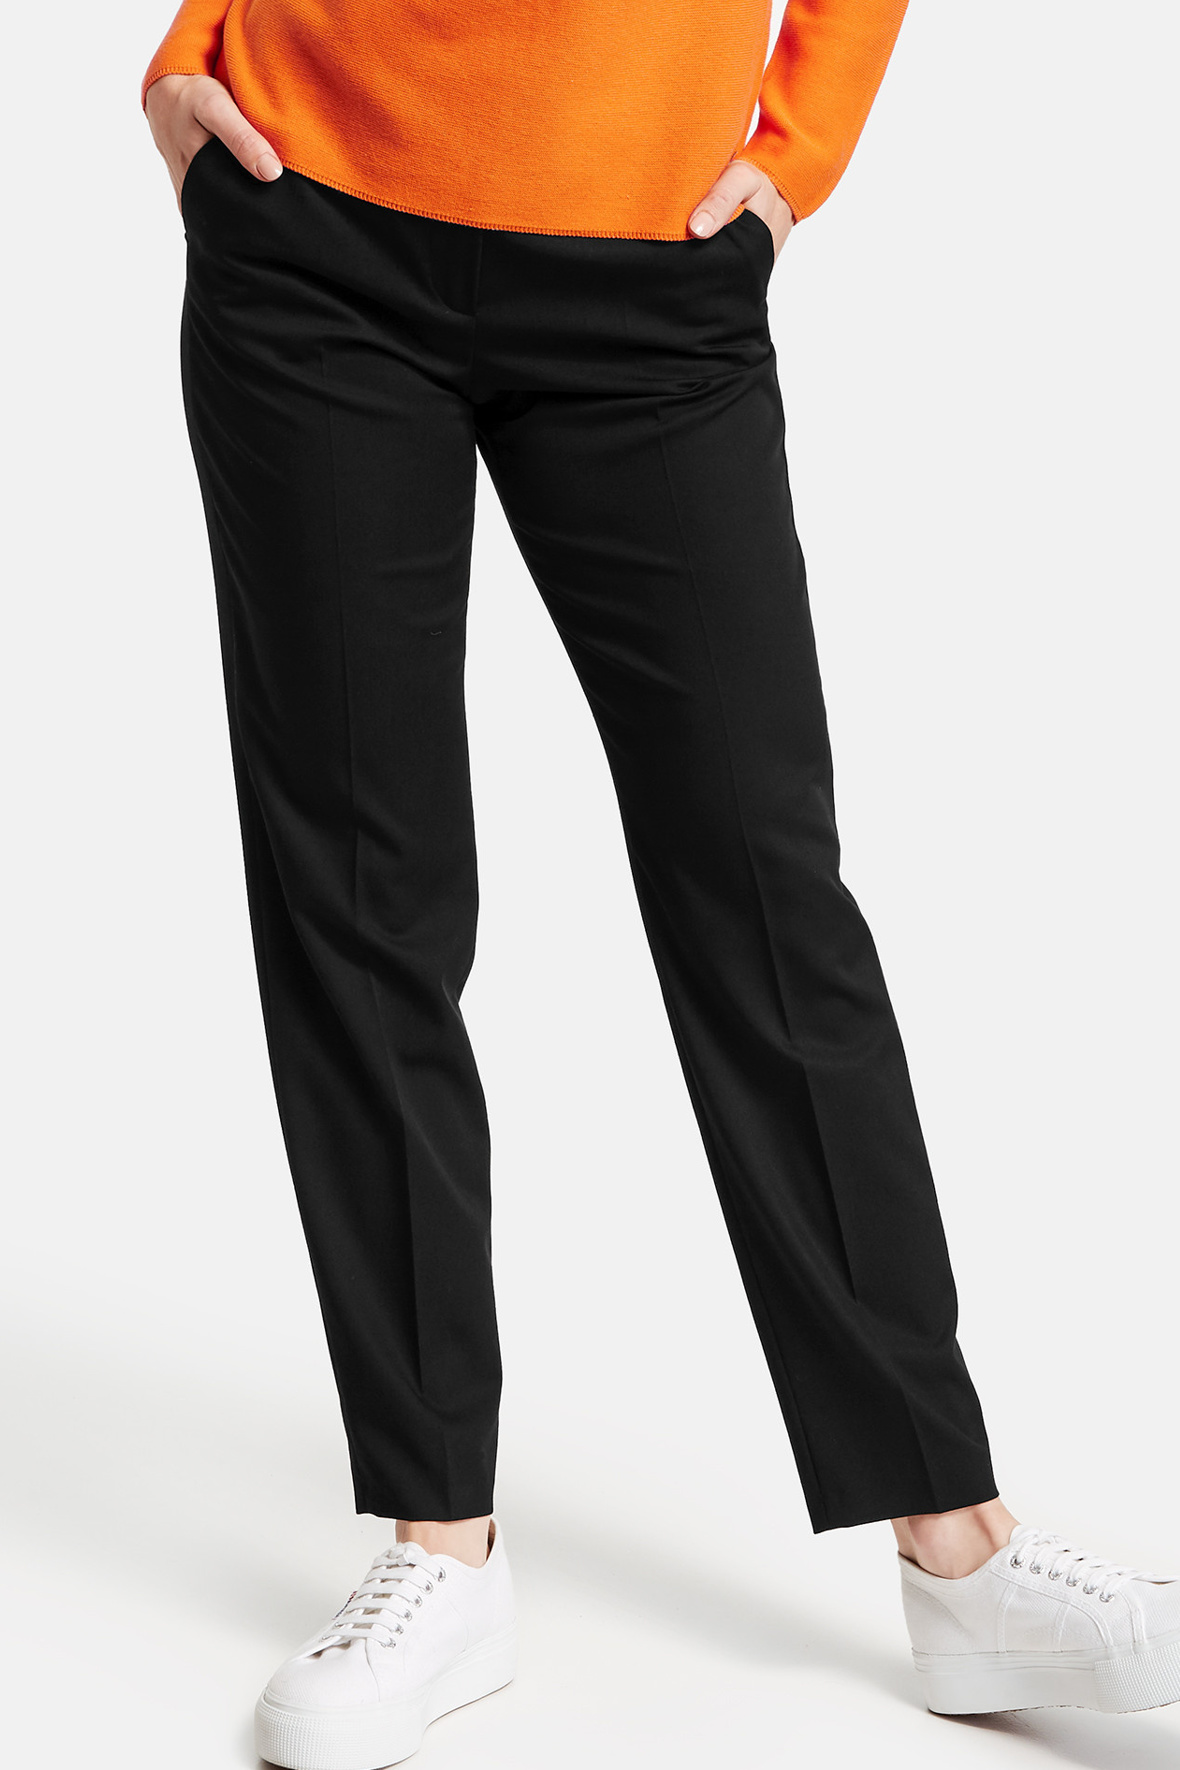 sorte bukser med pressefolder moderne snit - damer - Hos Lohse